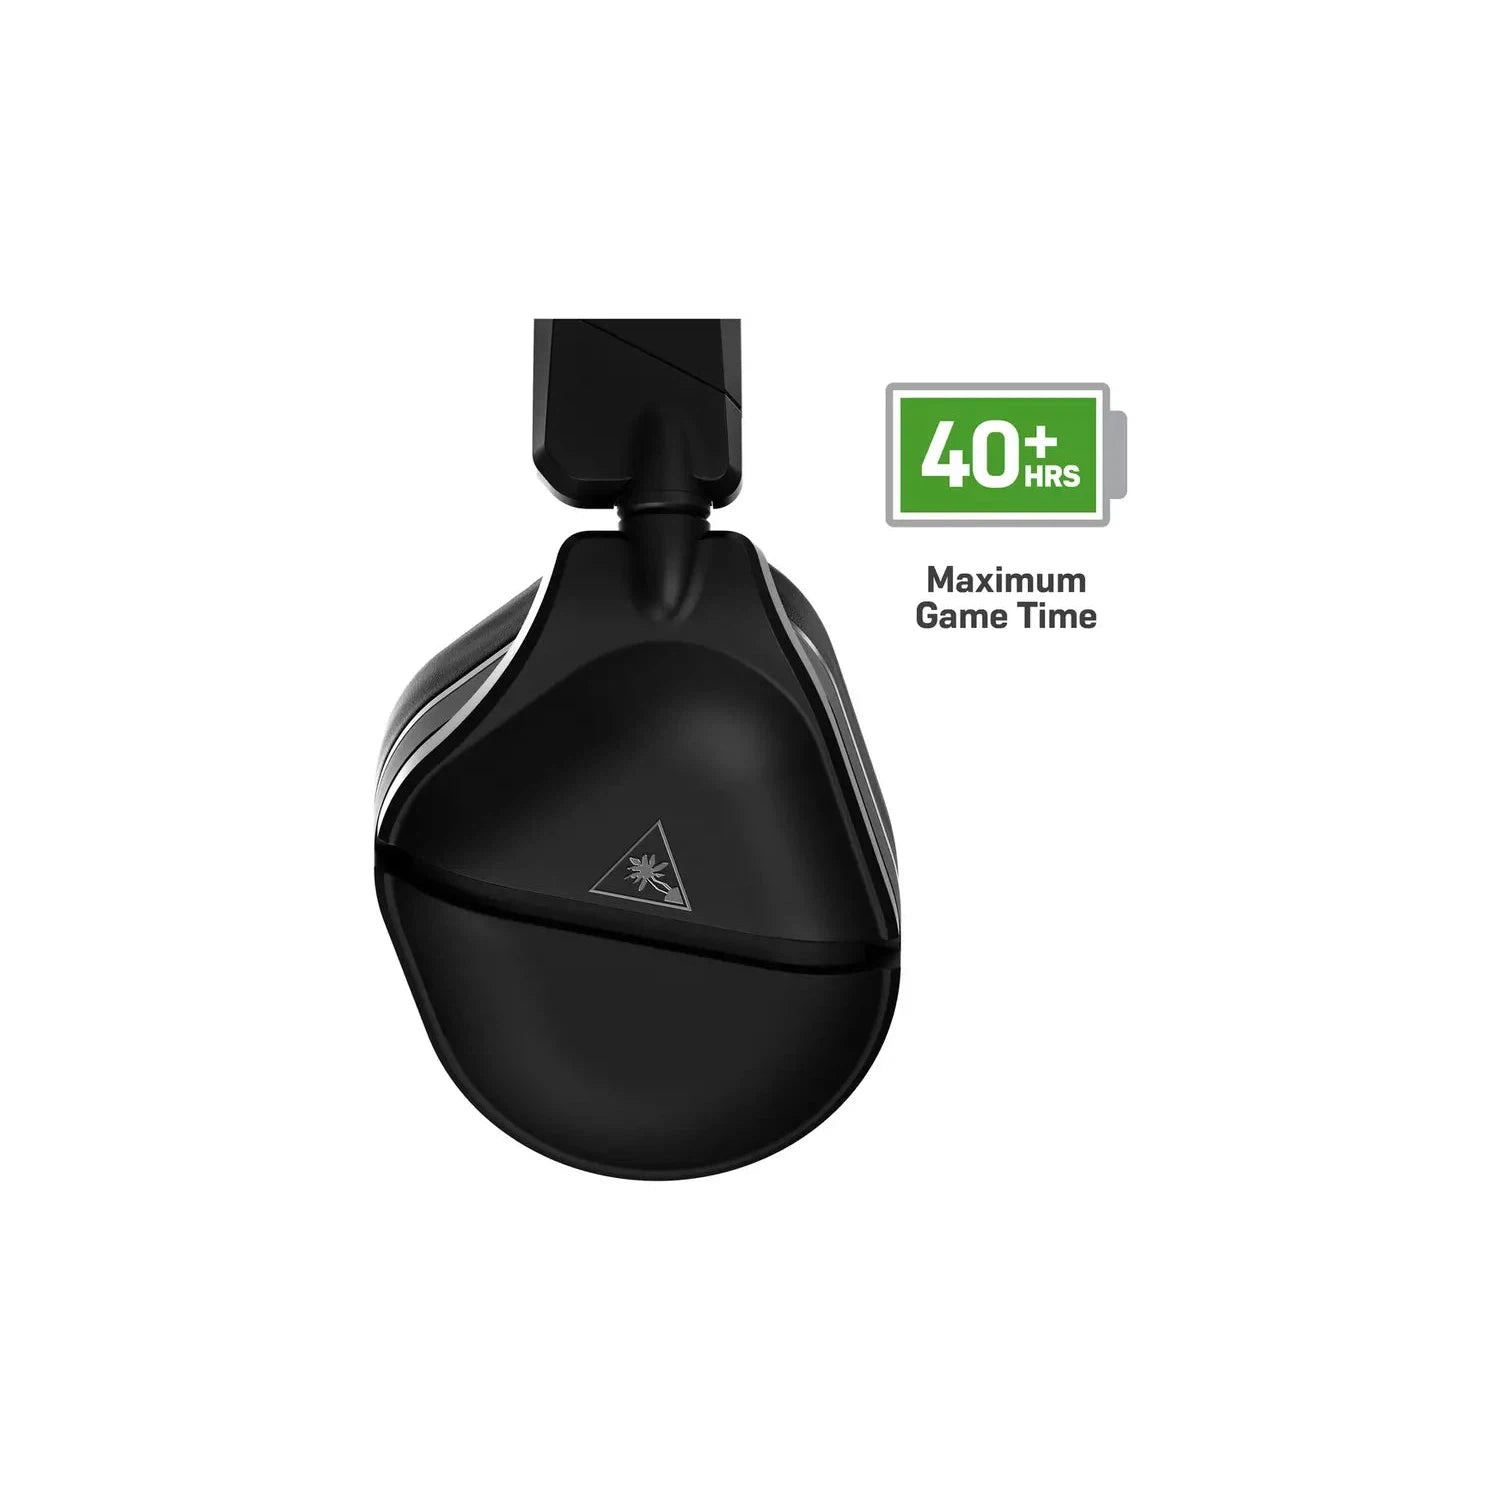 Turtle Beach Stealth 700 Gen 2 MAX Wireless Xbox, PC Headset - Black - Refurbished Excellent